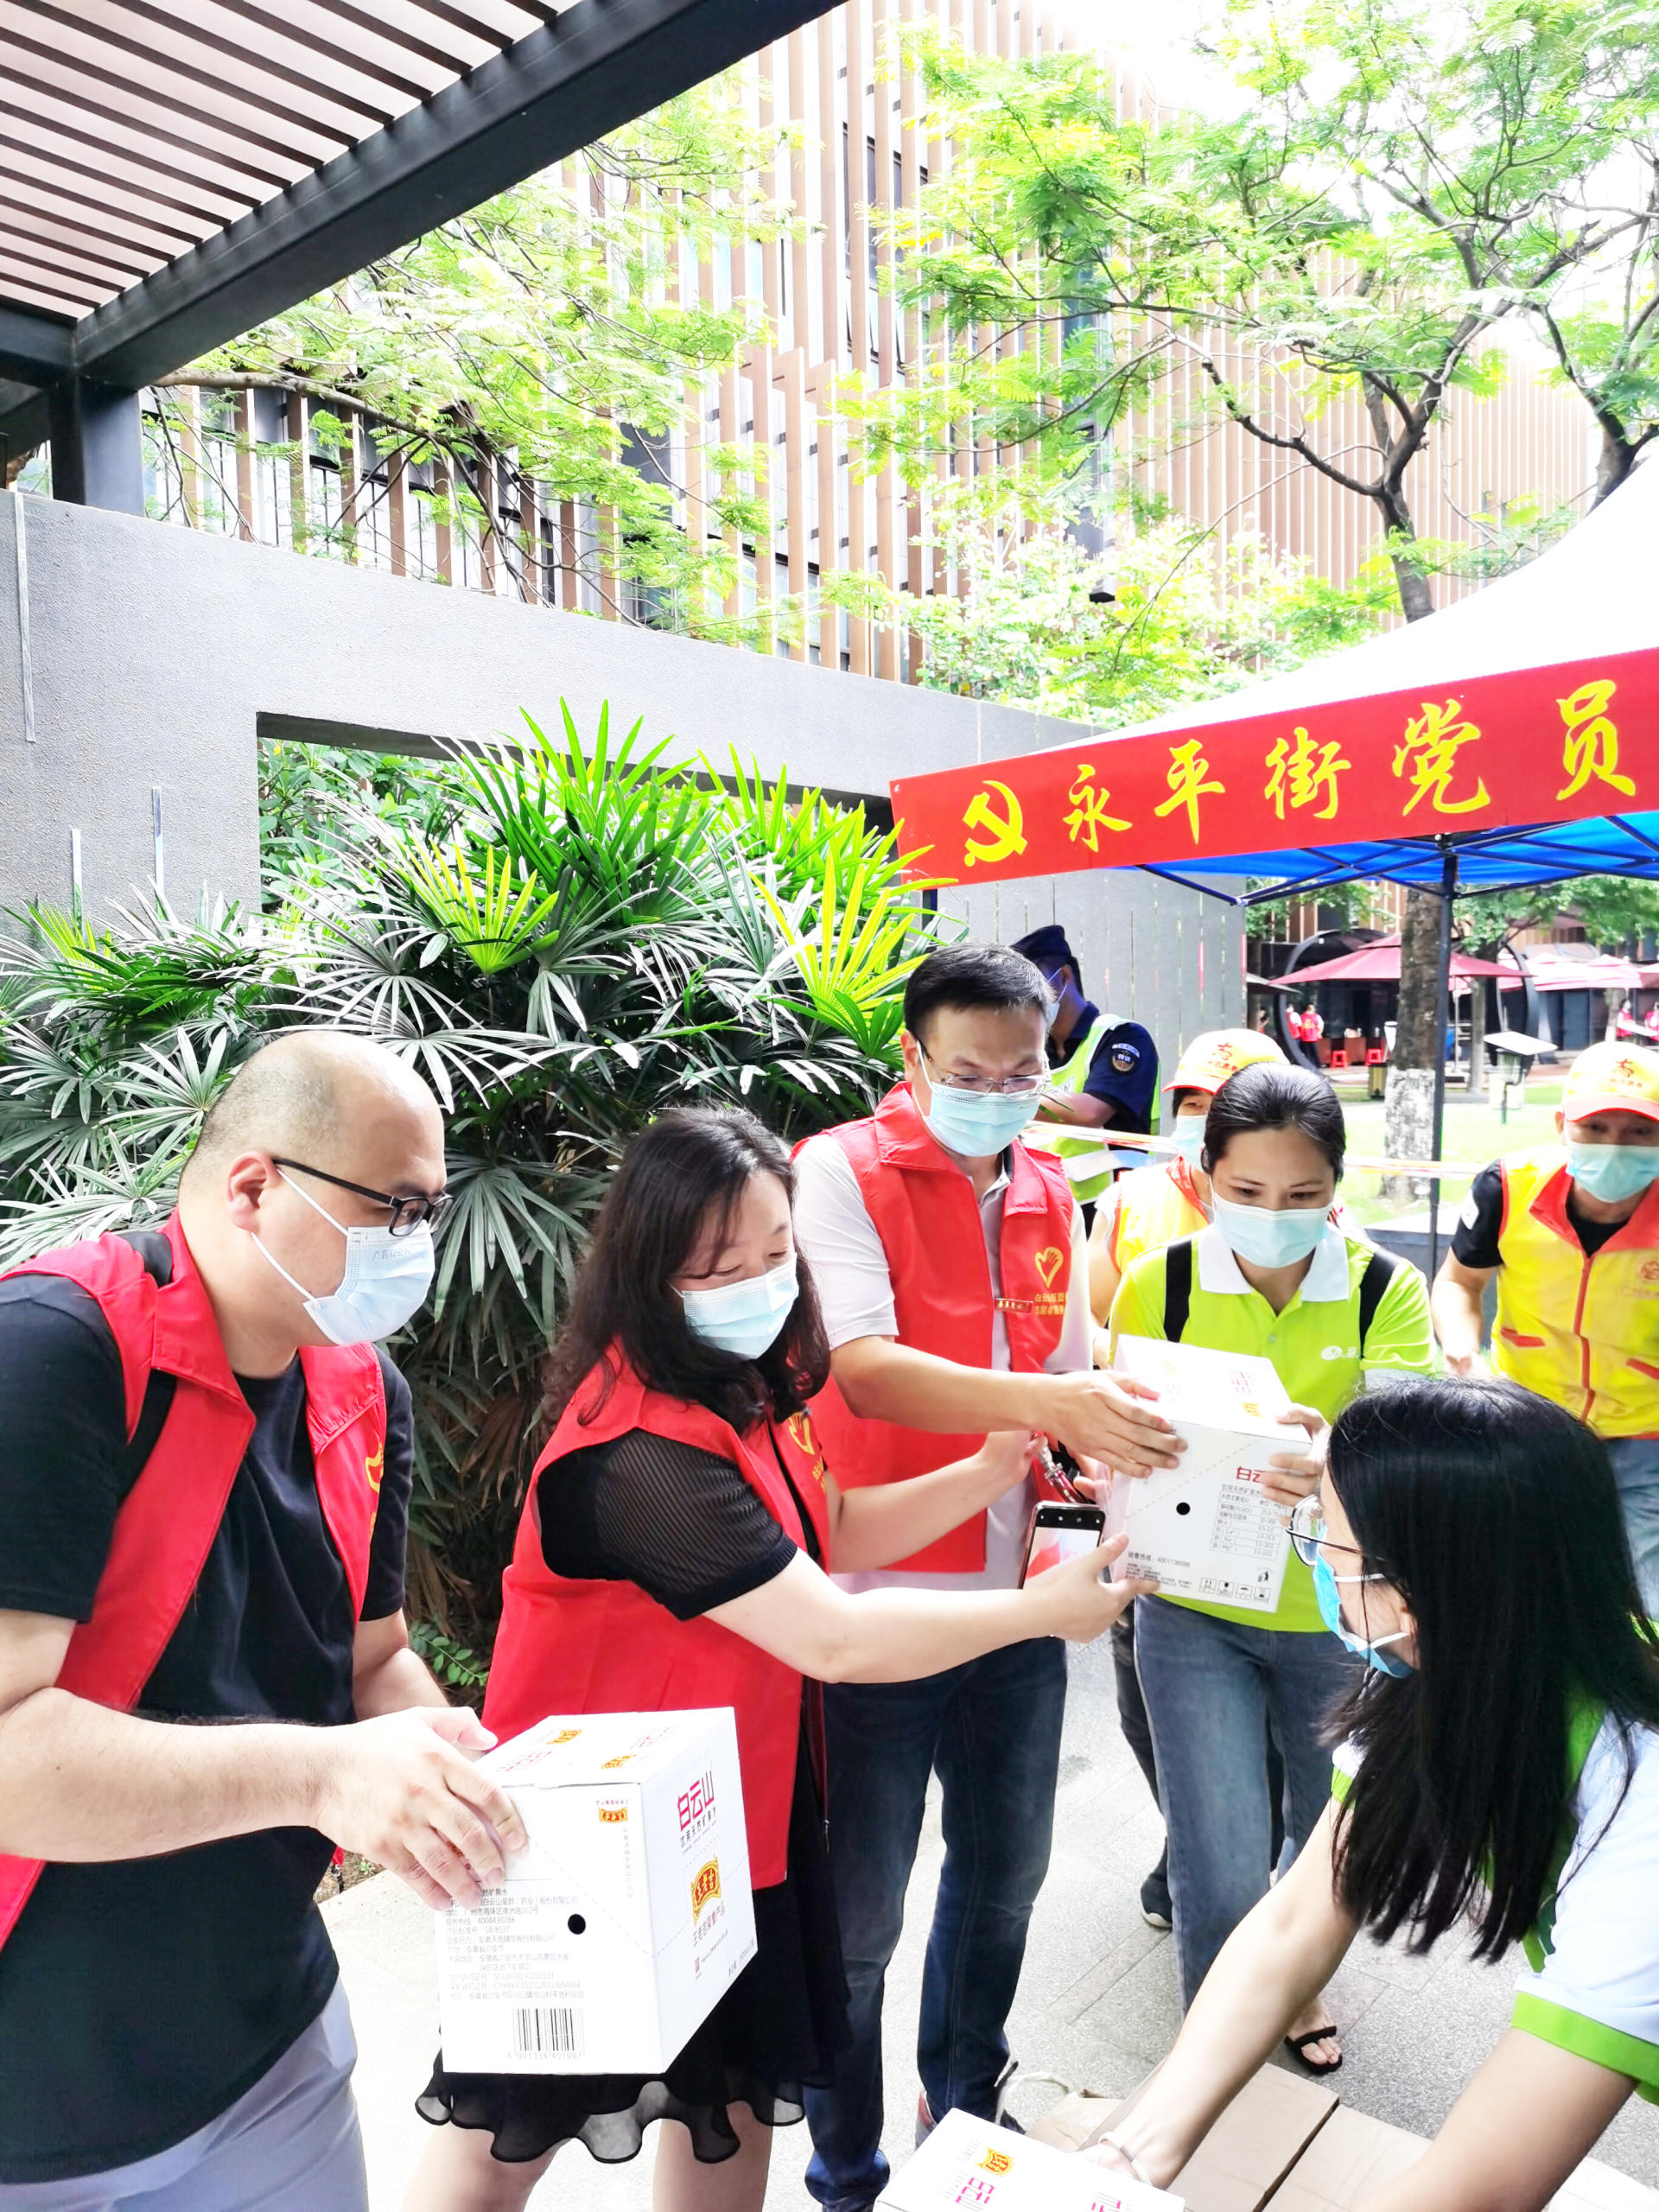 板蓝根颗粒所属白云山和黄中药捐赠防疫物资支持广州抗疫